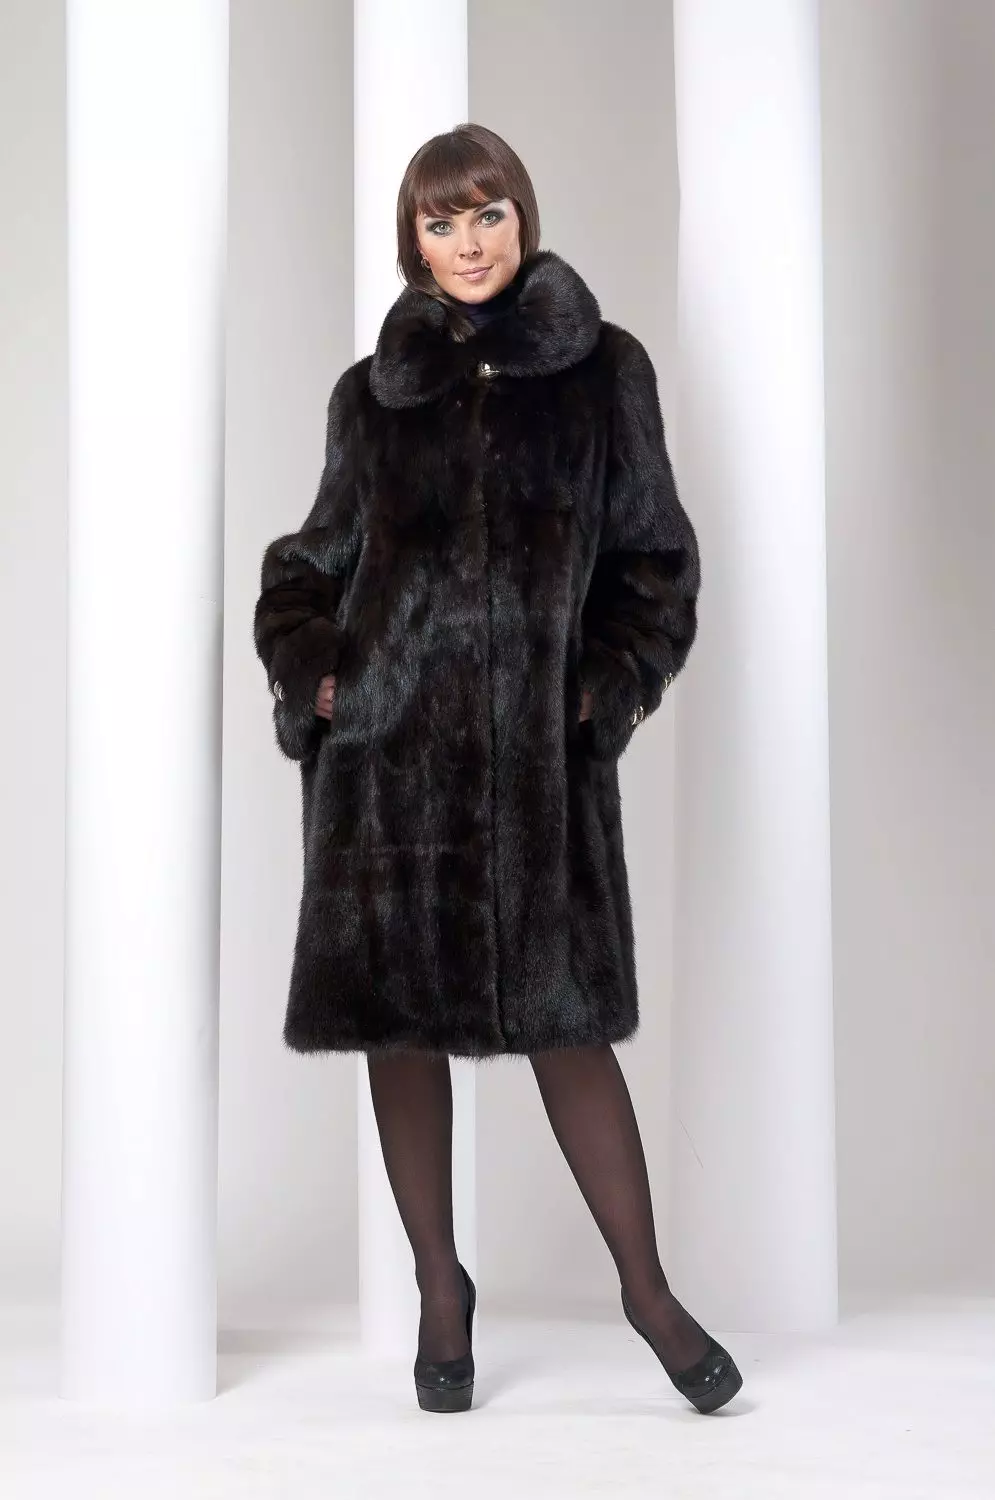 Blană de blană sau oi (137 fotografii): Ce este mai bun și acel încălzitor pentru hainele de iarnă - haine, jachete sau jachete în jos decât haina diferă de oi 738_88